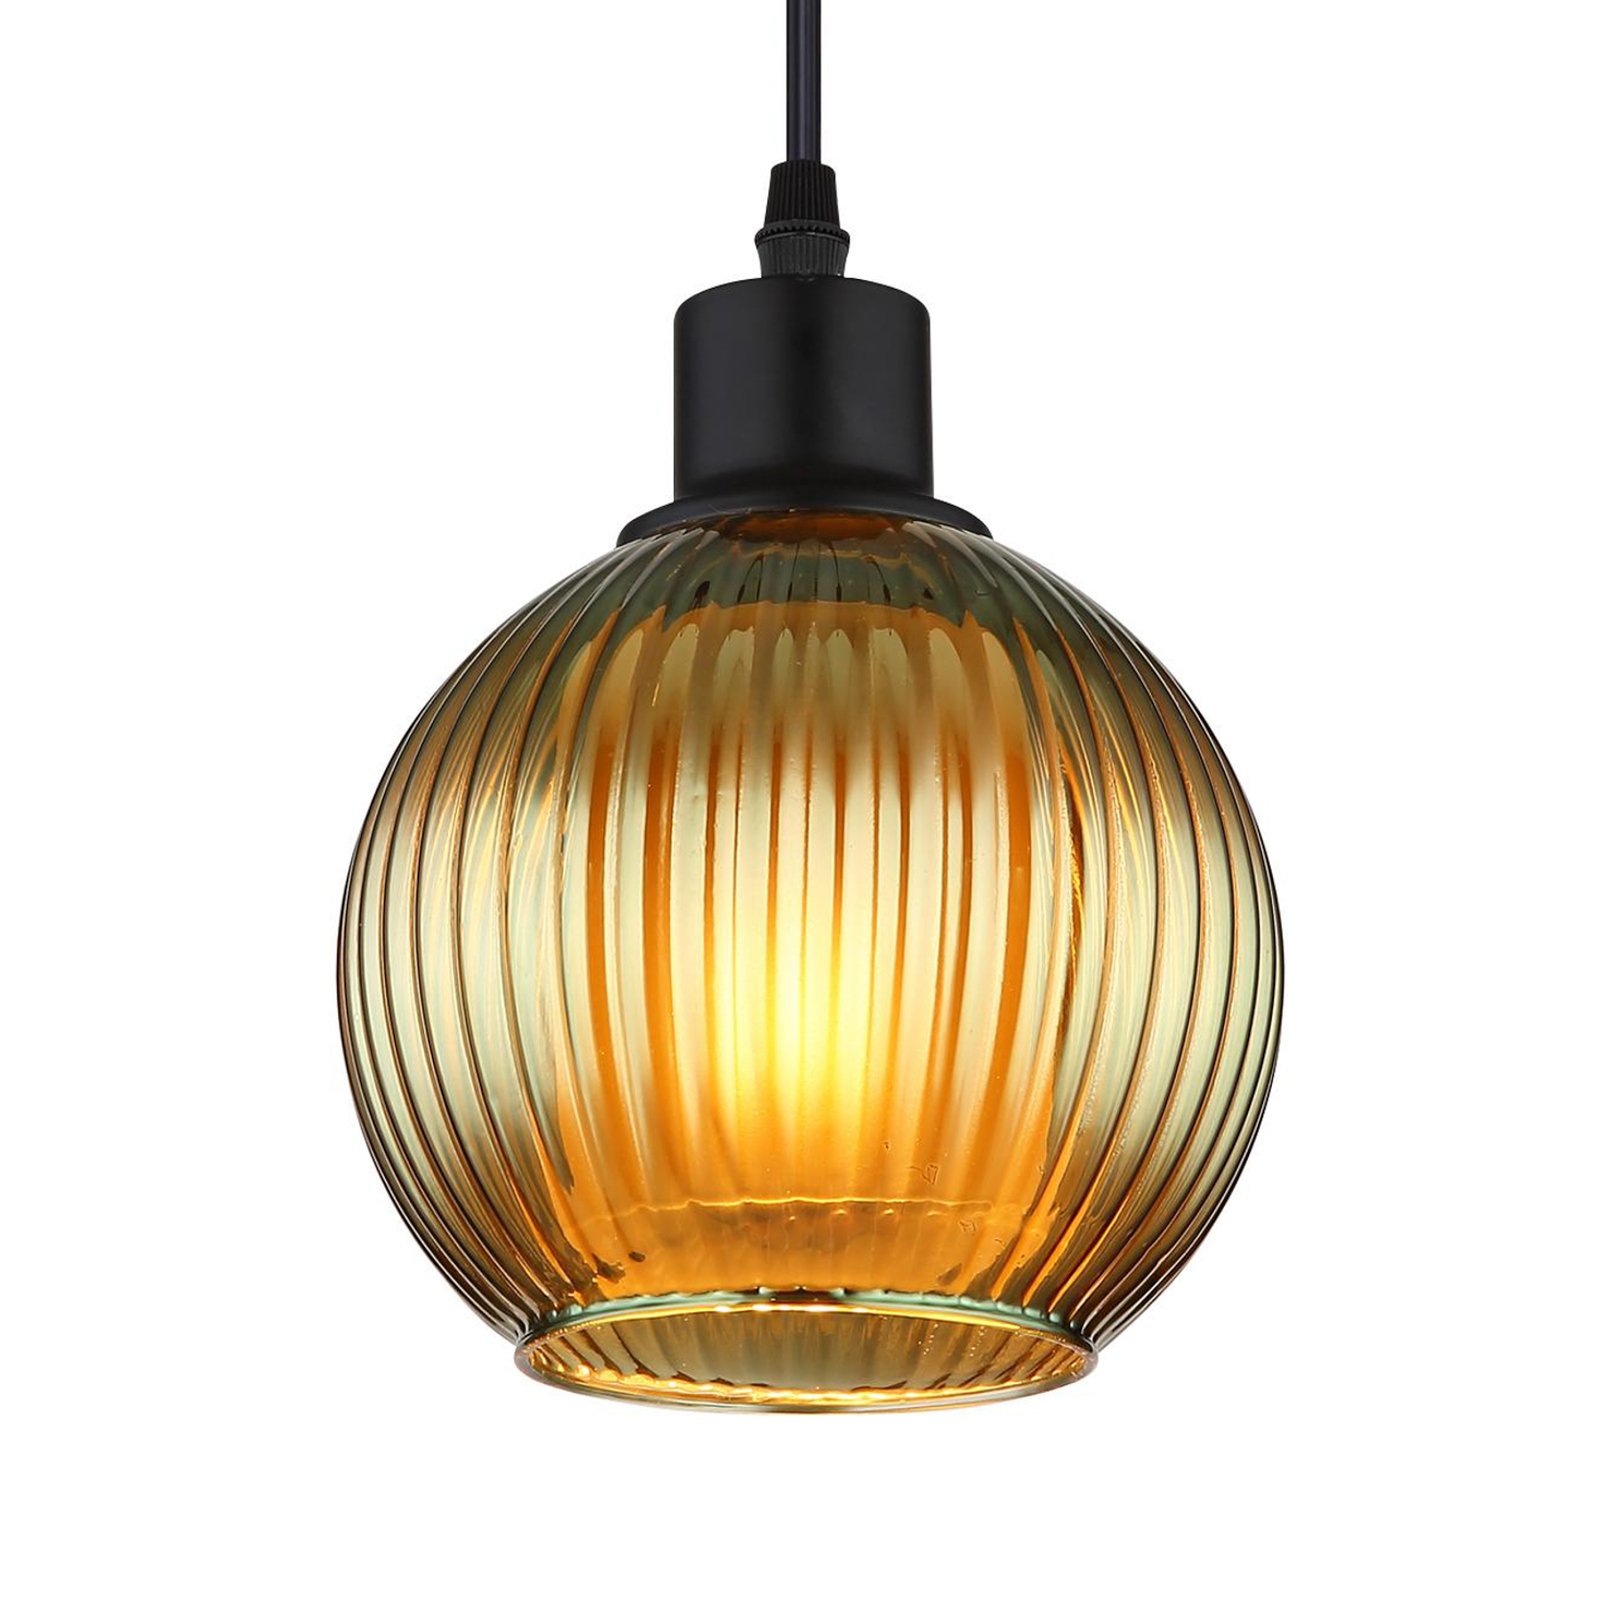 Závěsná lampa Zumba, zelená/bronzová/benzínová, 90 cm, 4 světla, sklo